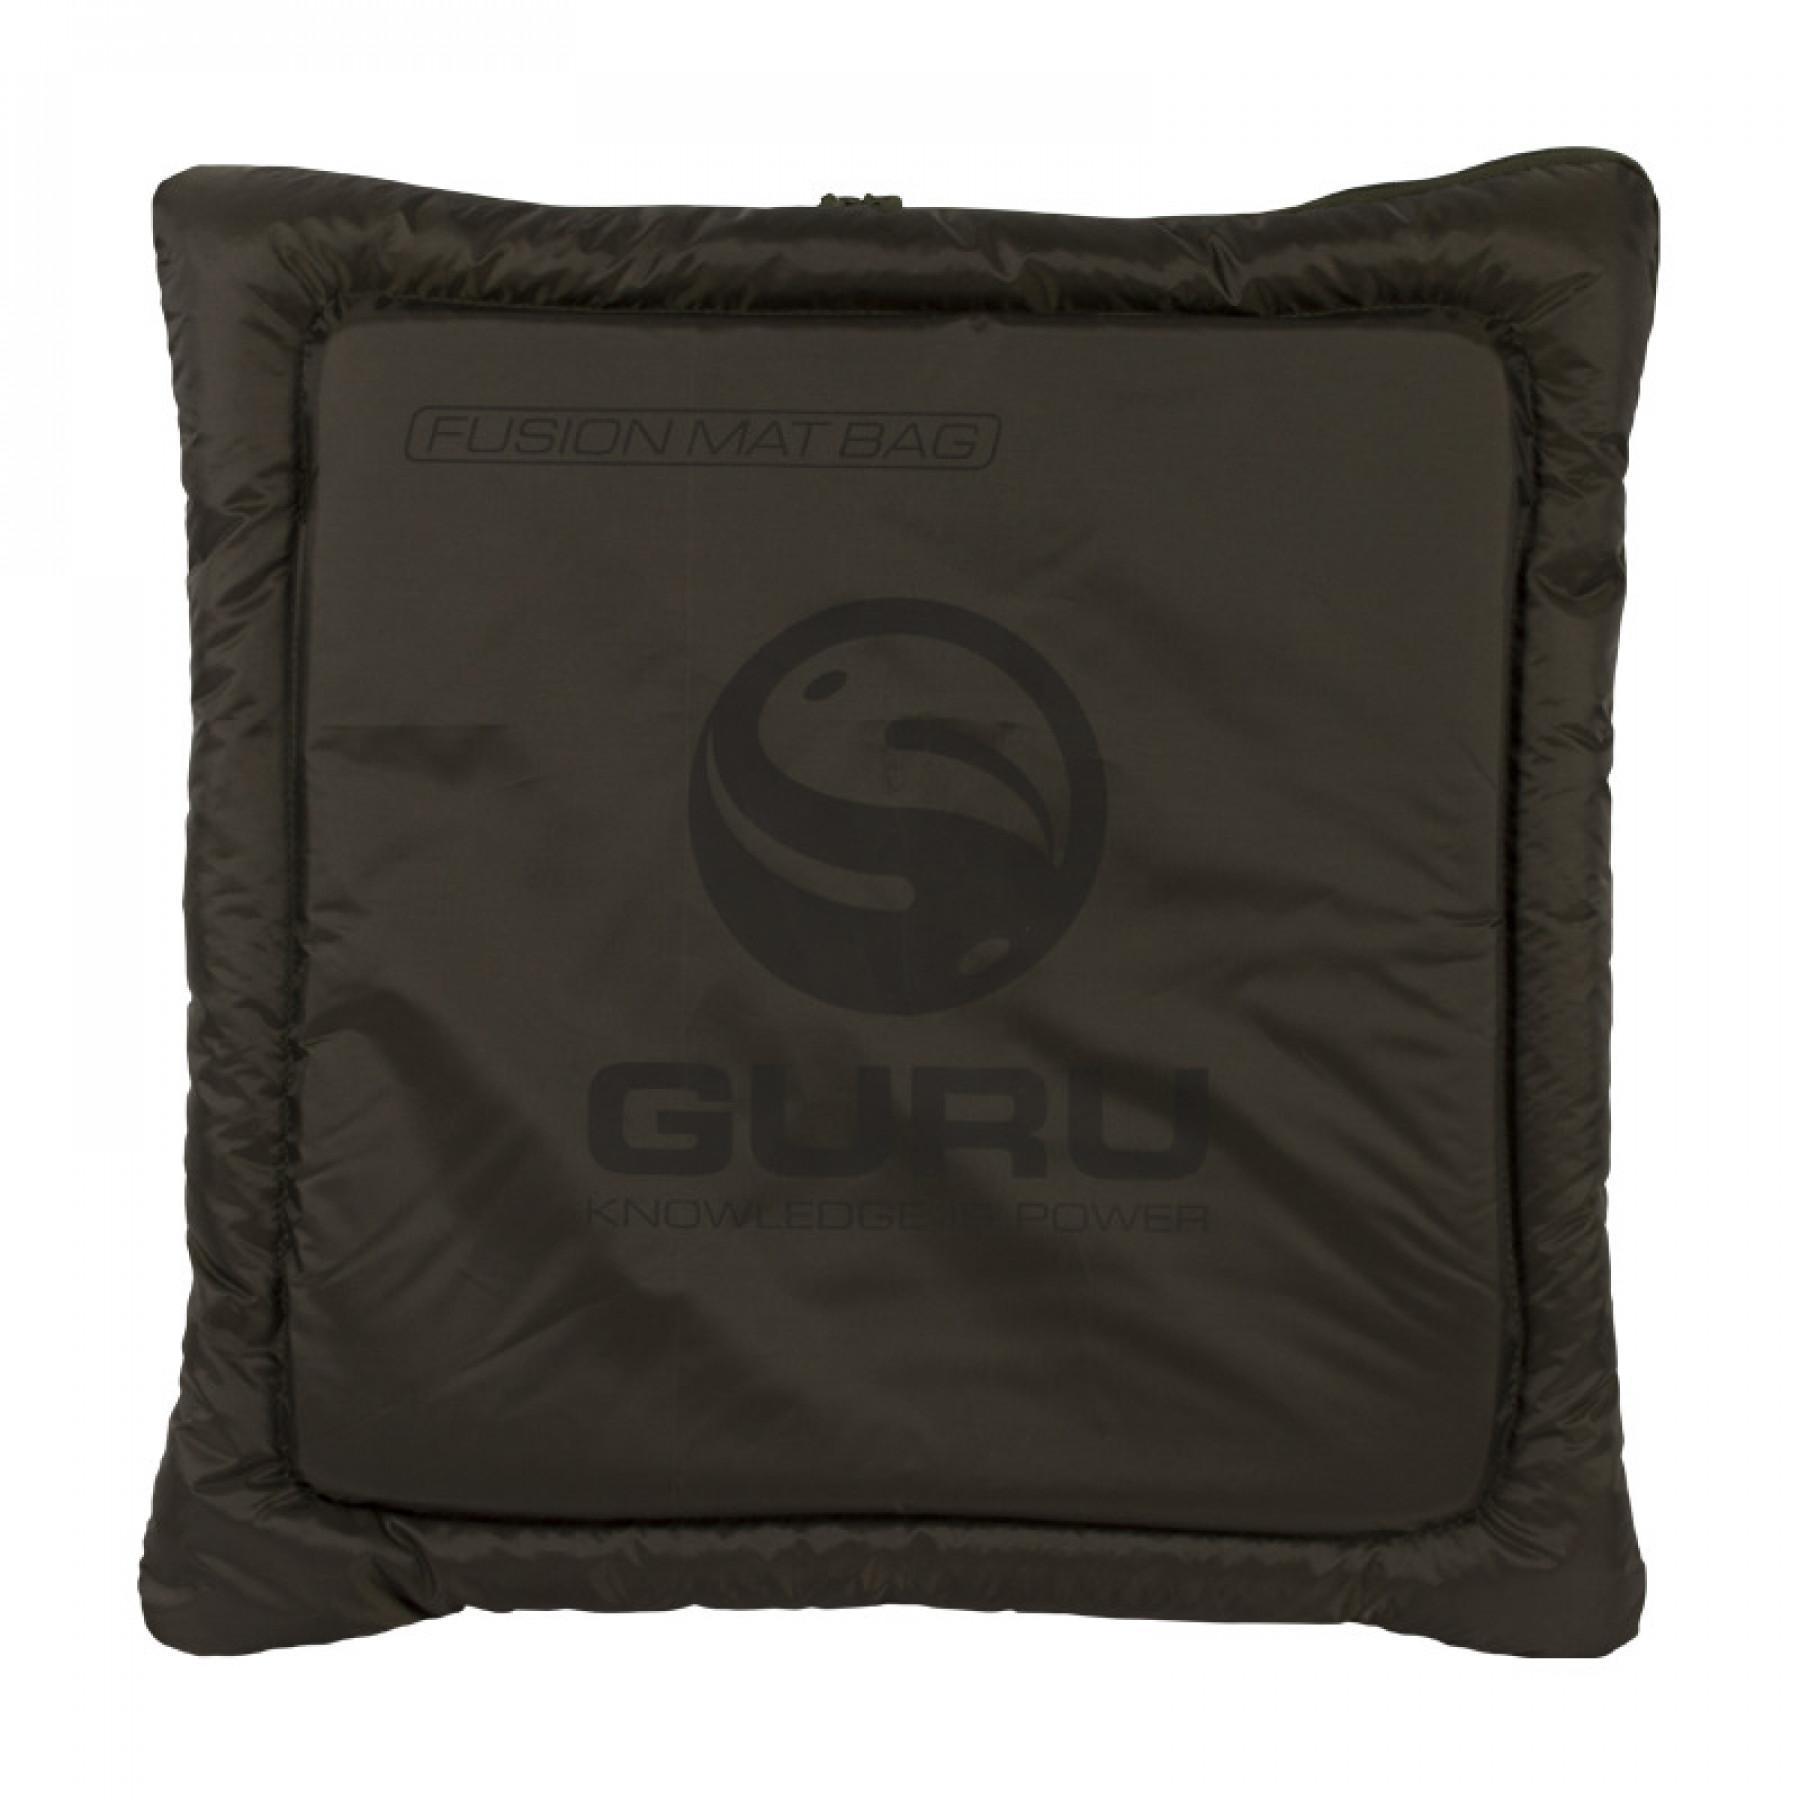 Tapete de recepção Guru Fusion Mat Bag